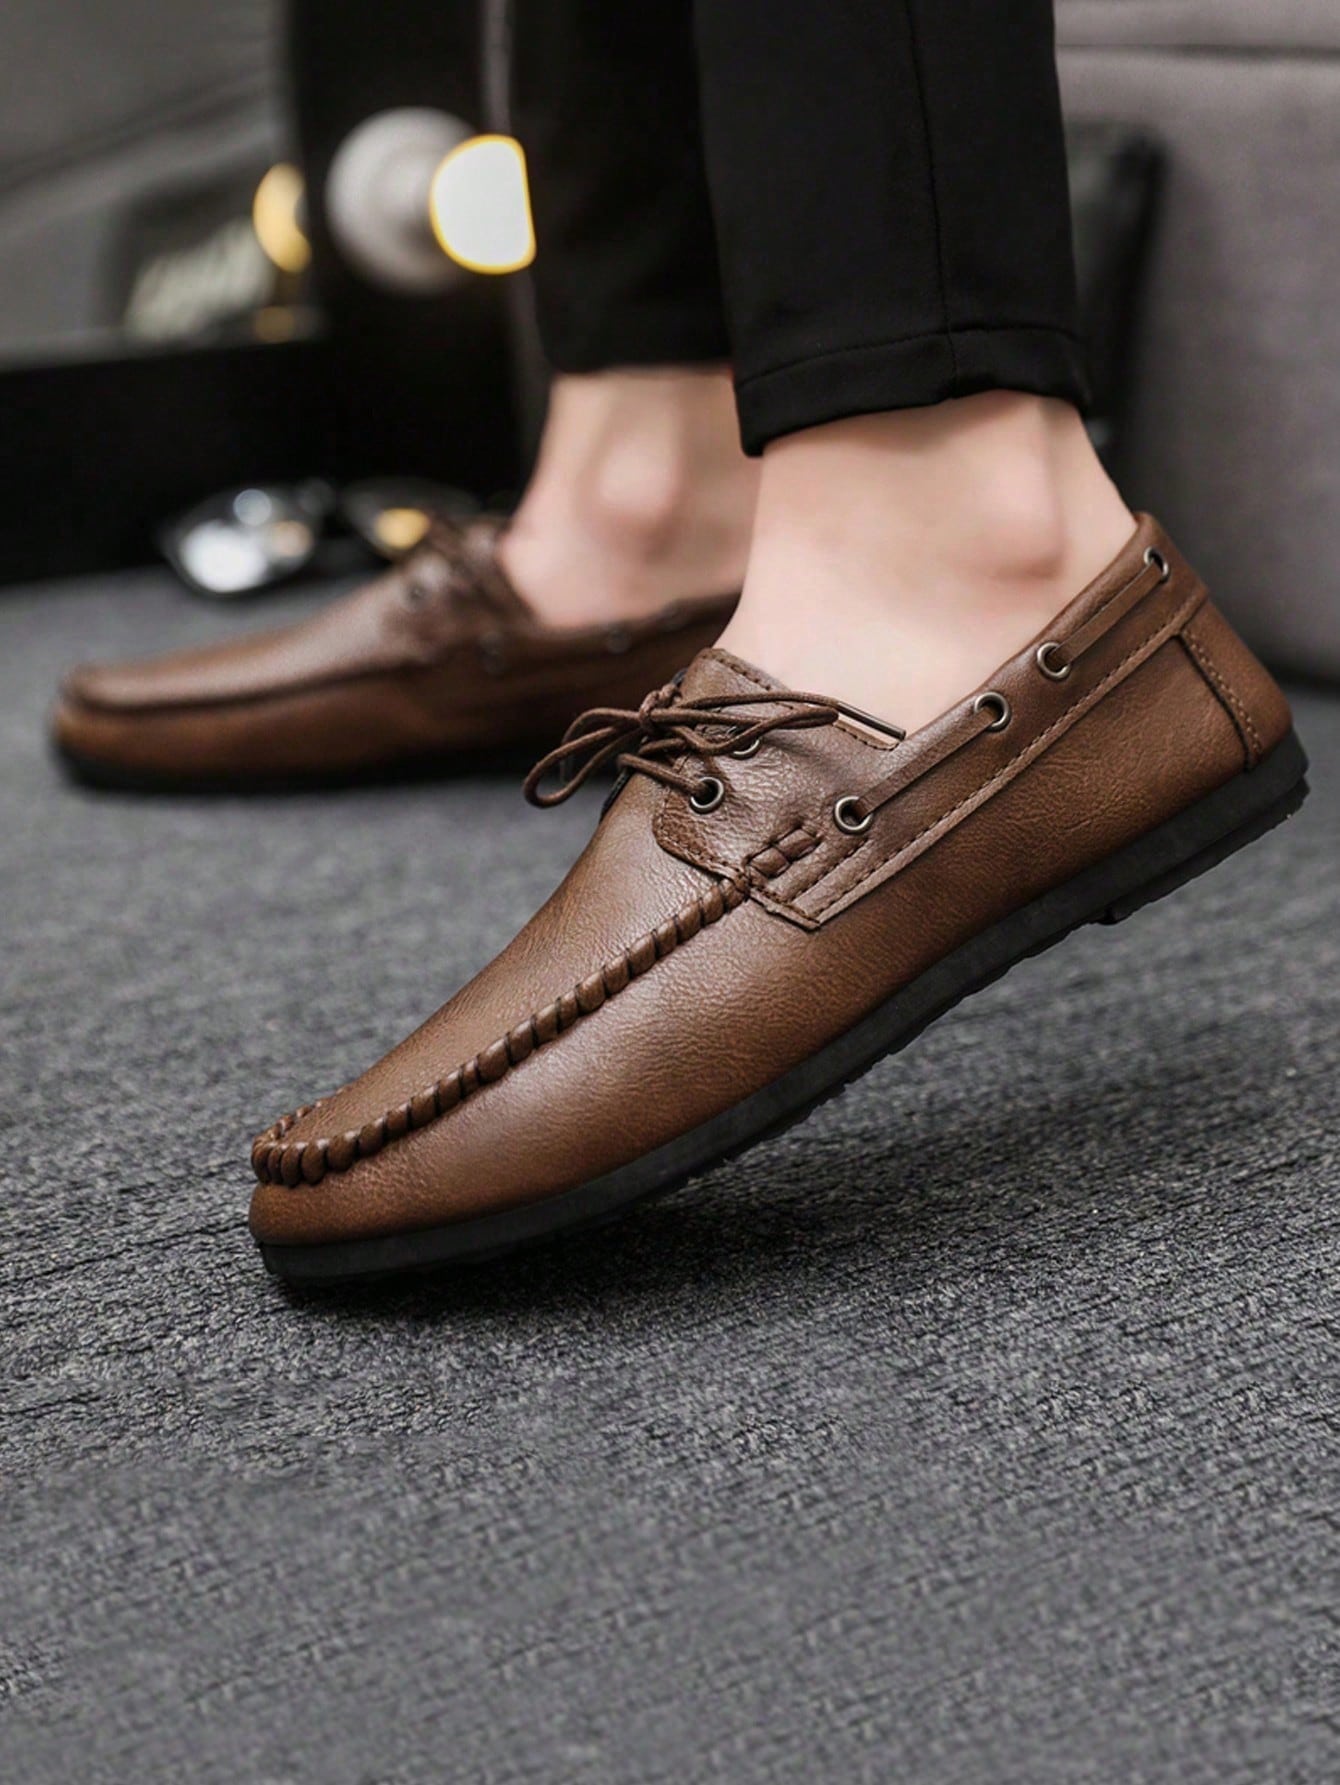 Официальные повседневные кожаные туфли в британском стиле на шнуровке для мужчин, коричневый мужские кожаные кроссовки 2022 на шнуровке модные и удобные в британском стиле